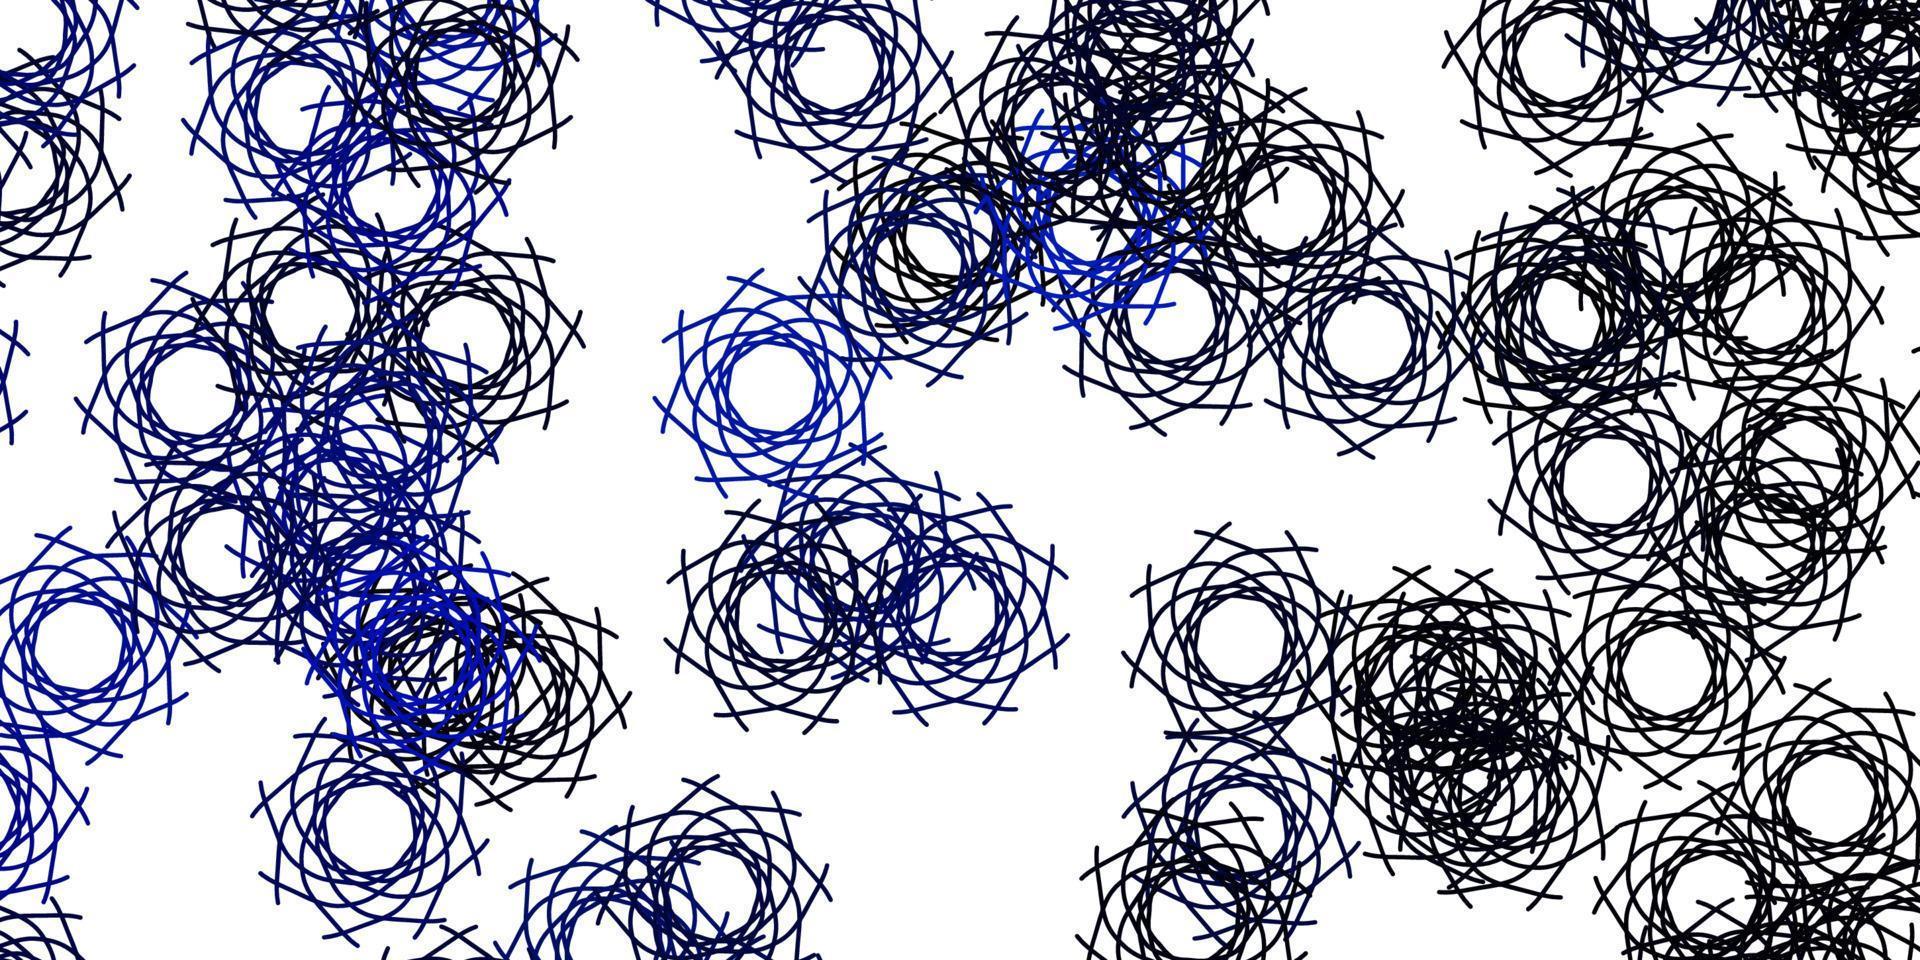 padrão de vetor azul claro com formas abstratas.